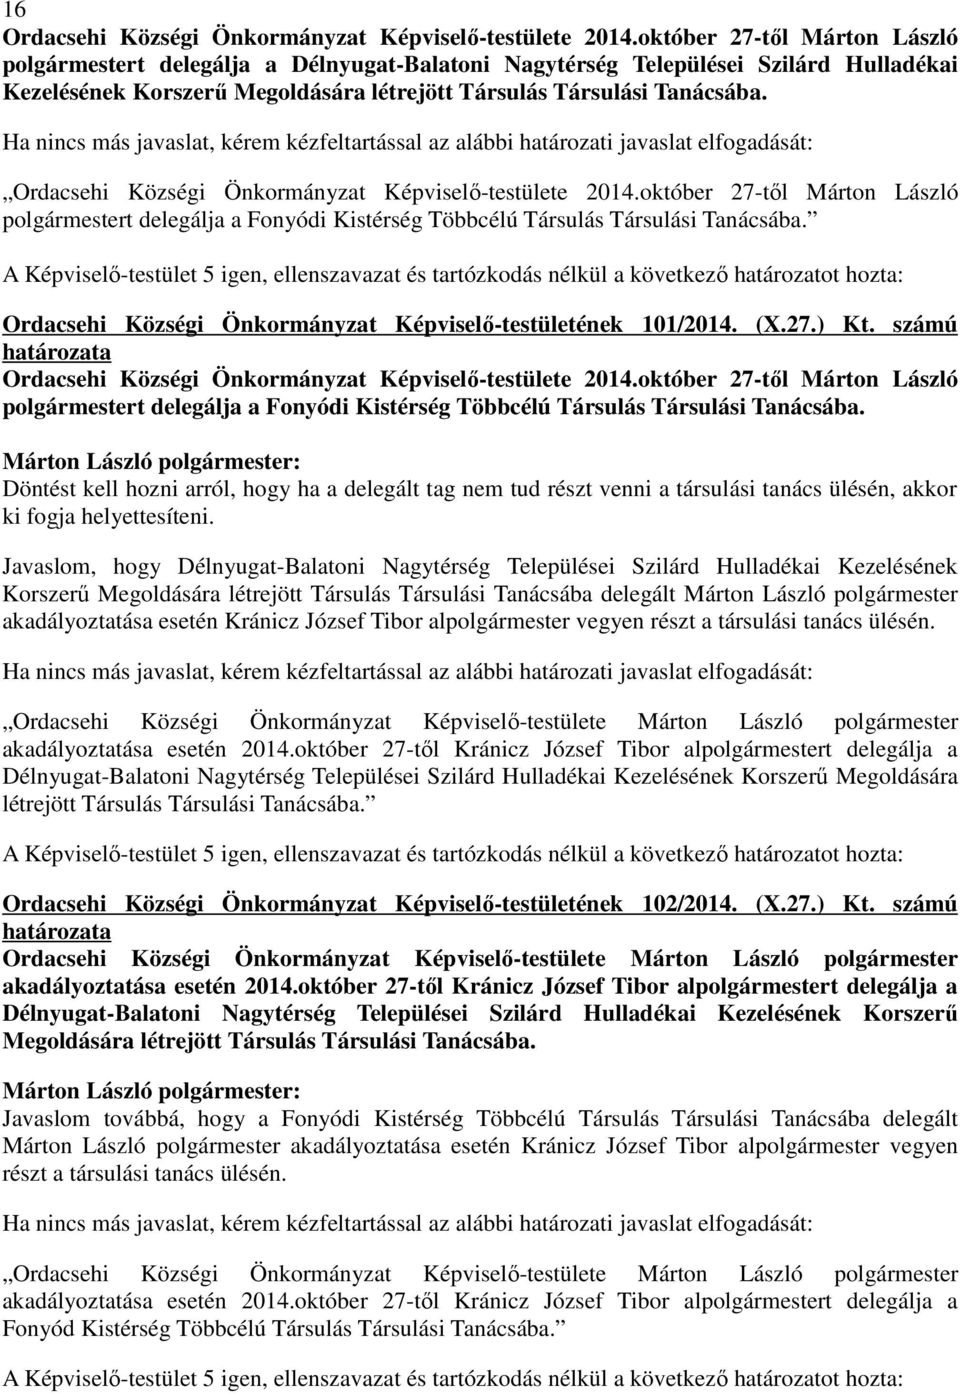 Ha nincs más javaslat, kérem kézfeltartással az alábbi határozati javaslat elfogadását: Ordacsehi Községi Önkormányzat Képviselı-testülete 2014.